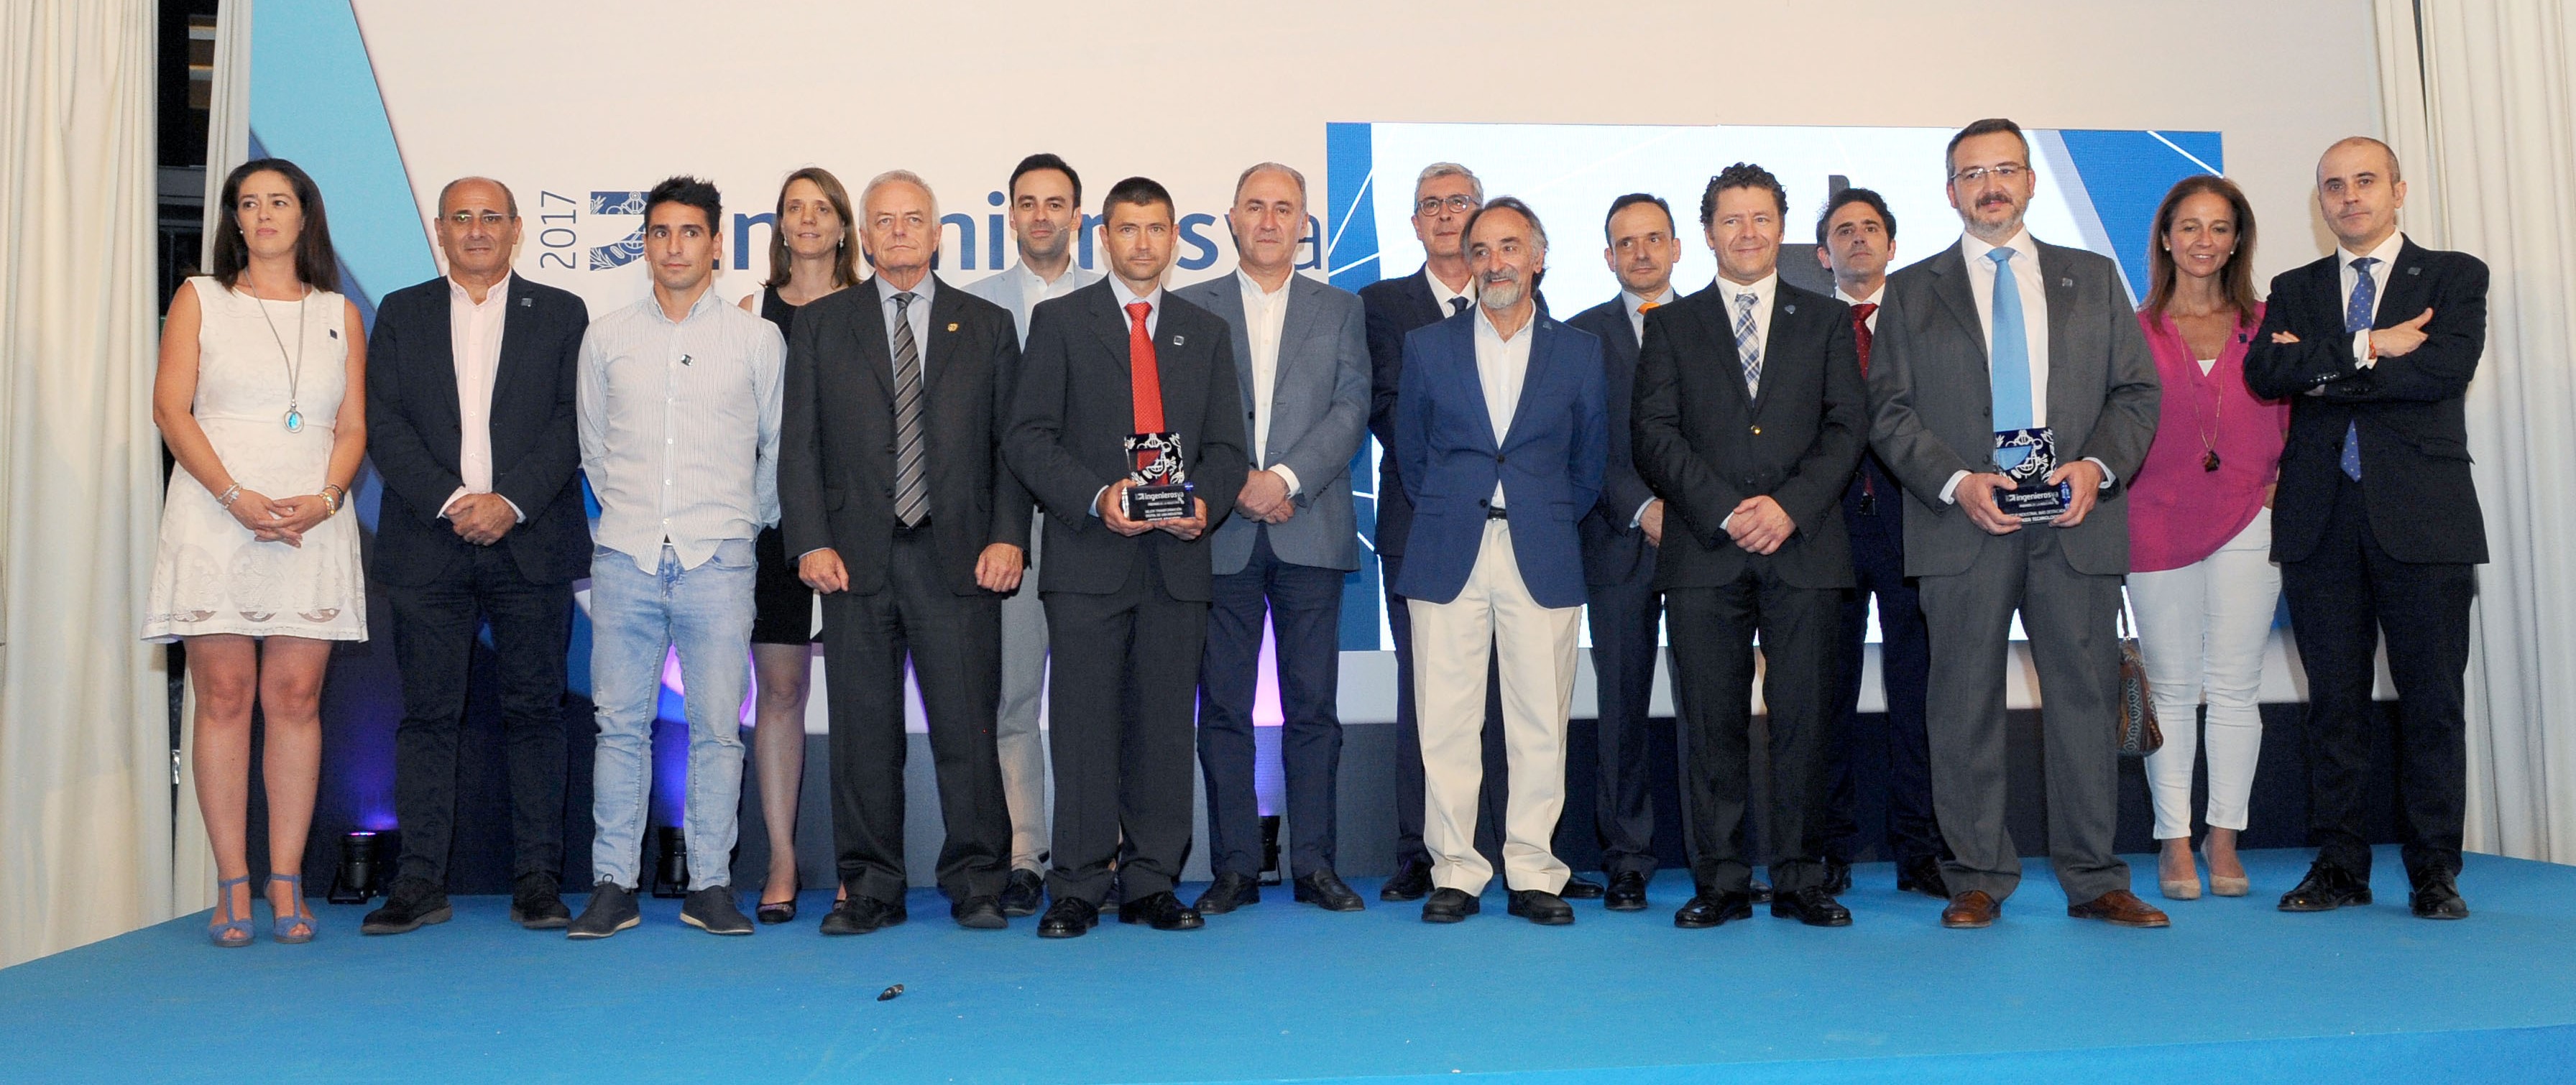 Foto familia Premios ingenierosVA de la Industria